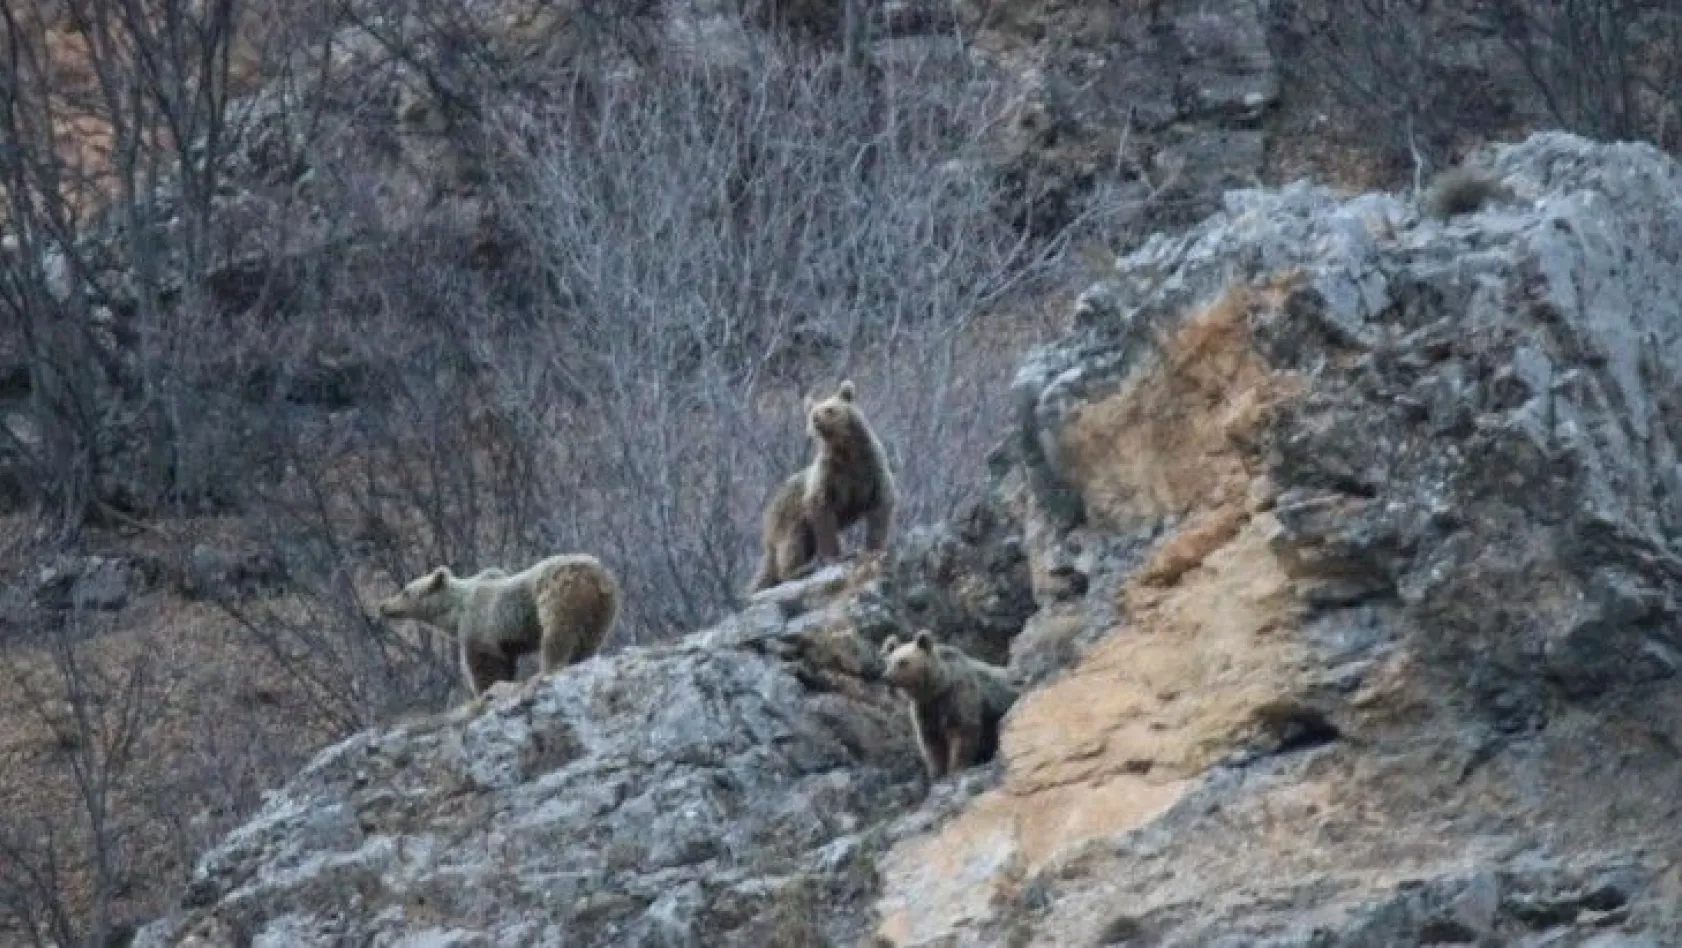 Kış uykusundan uyanan anne ve yavru ayılar görüntülendi